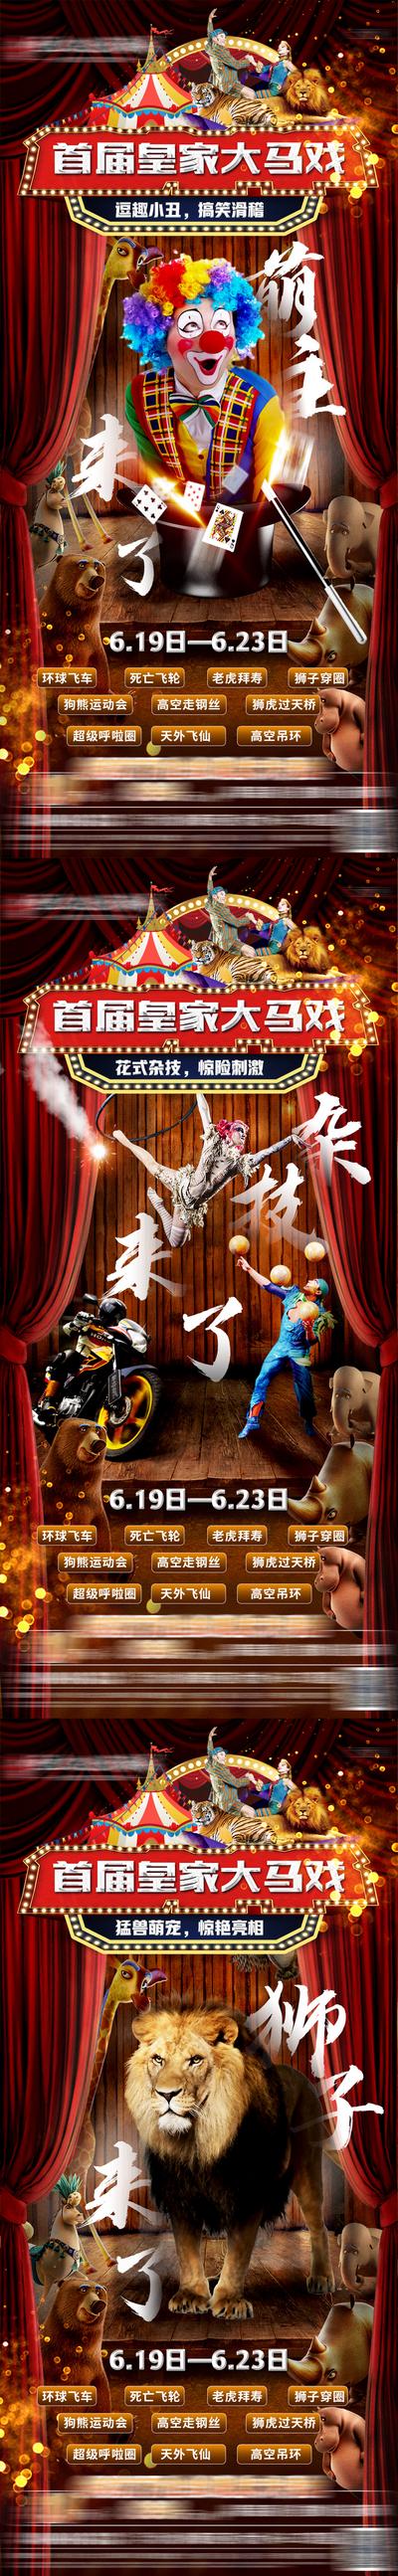 南门网 海报 马戏团 小丑 狮子 杂技 系列